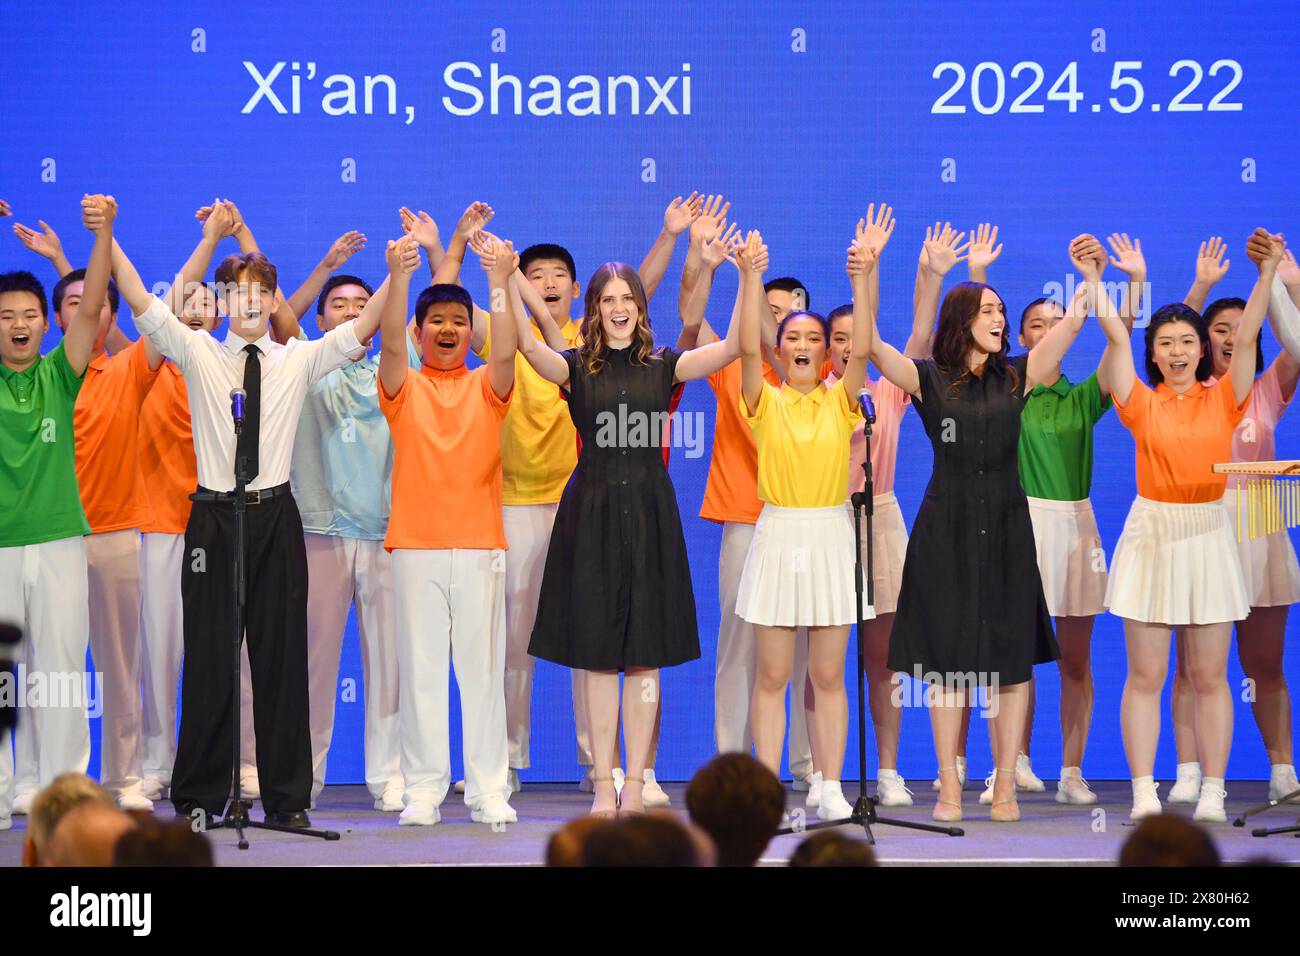 (240522) -- XI'AN, 22 mai 2024 (Xinhua) -- des étudiants chinois et amérindiens se produisent lors de la cérémonie d'ouverture de la 14e édition de la Chine-États-Unis Sommet du leadership touristique à Xi'an, dans la province du Shaanxi, au nord-ouest de la Chine, le 22 mai 2024. Le sommet s'est ouvert à Xi'an mercredi, avec le thème de 'expansion Chine-États-Unis Voyages et tourisme et échanges interpersonnels. » Il est co-organisé par le ministère de la culture et du Tourisme de Chine, le gouvernement populaire de la province de Shaanxi, le département américain du commerce et Brand USA. (Xinhua/Shao Rui) Banque D'Images